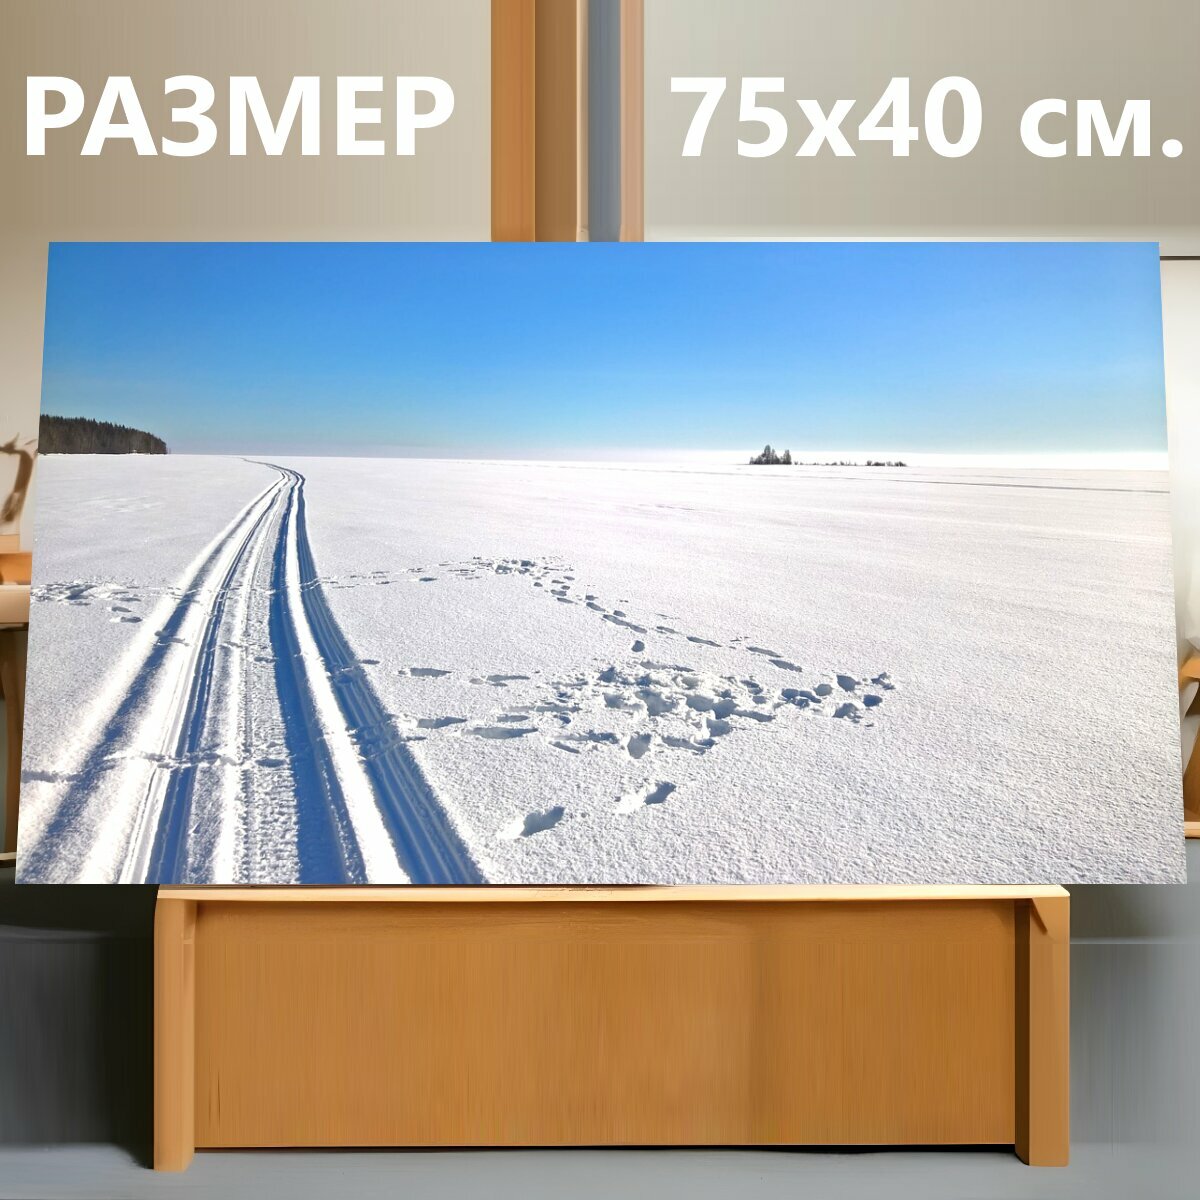 Картина на холсте "Лыжная трасса, горные лыжи, зима" на подрамнике 75х40 см. для интерьера